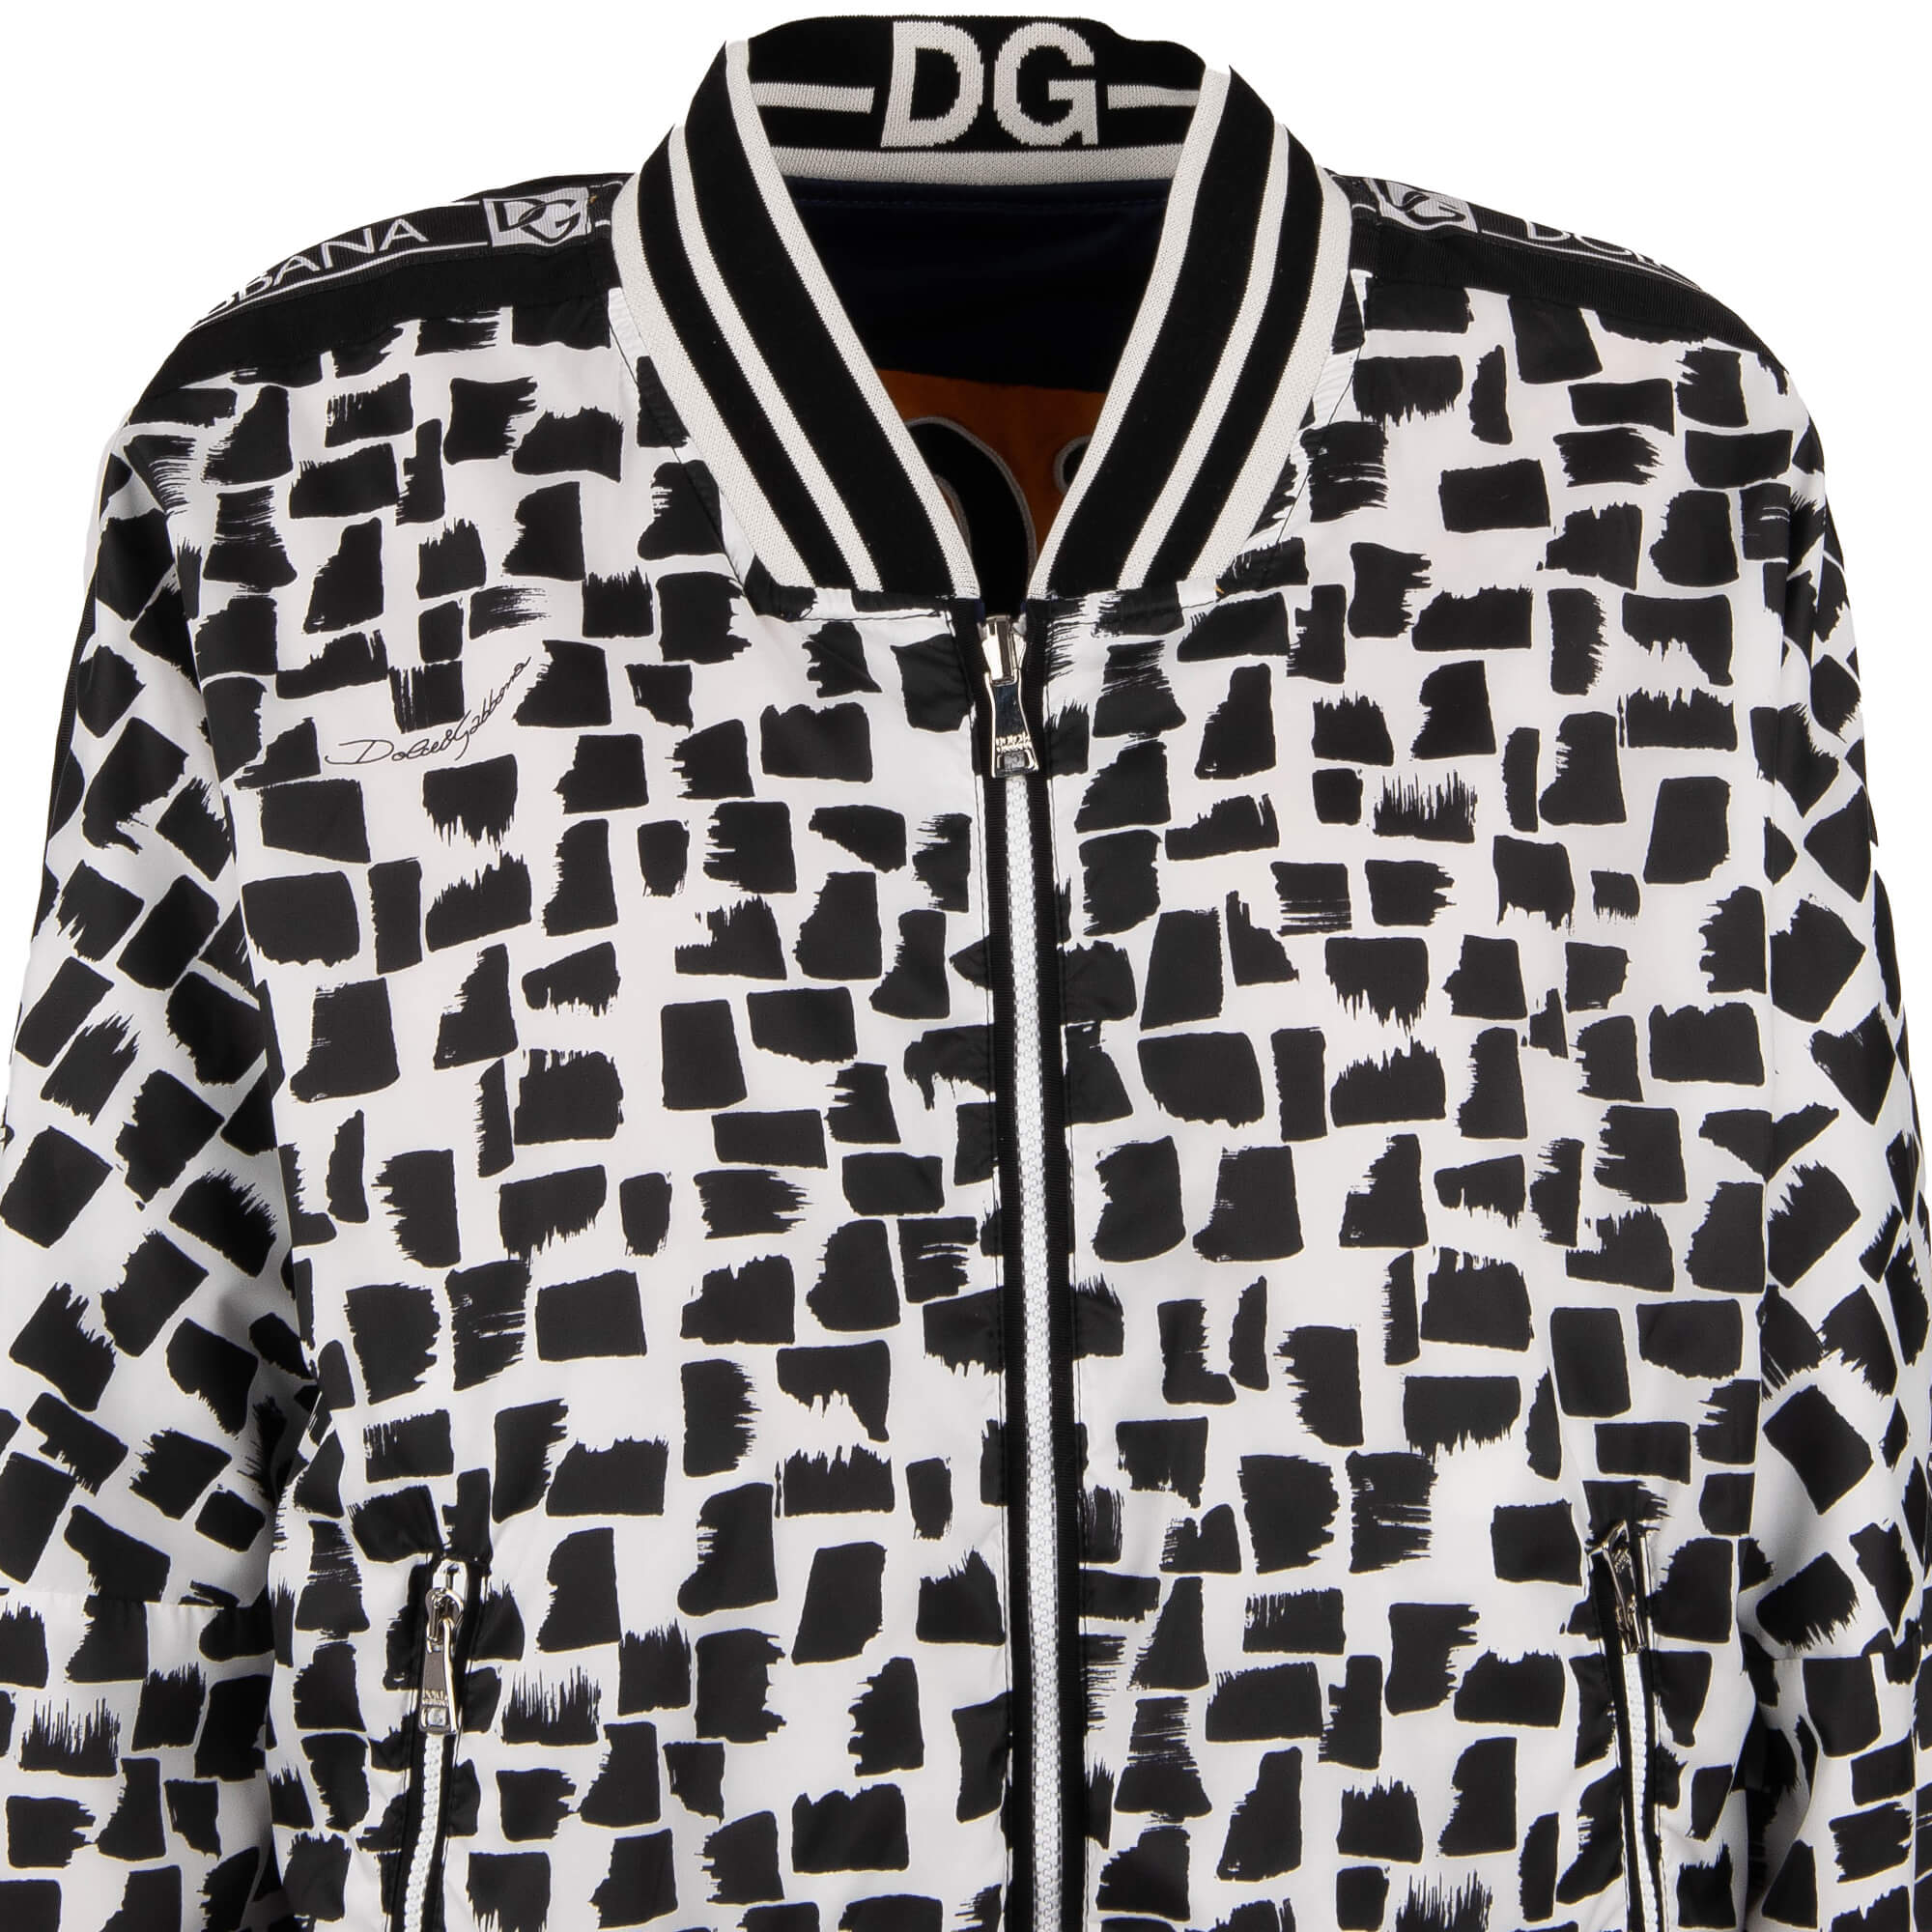 Dolce & Gabbana DG Queen Crown Amore Skull Reversible Jacket 40 S ...